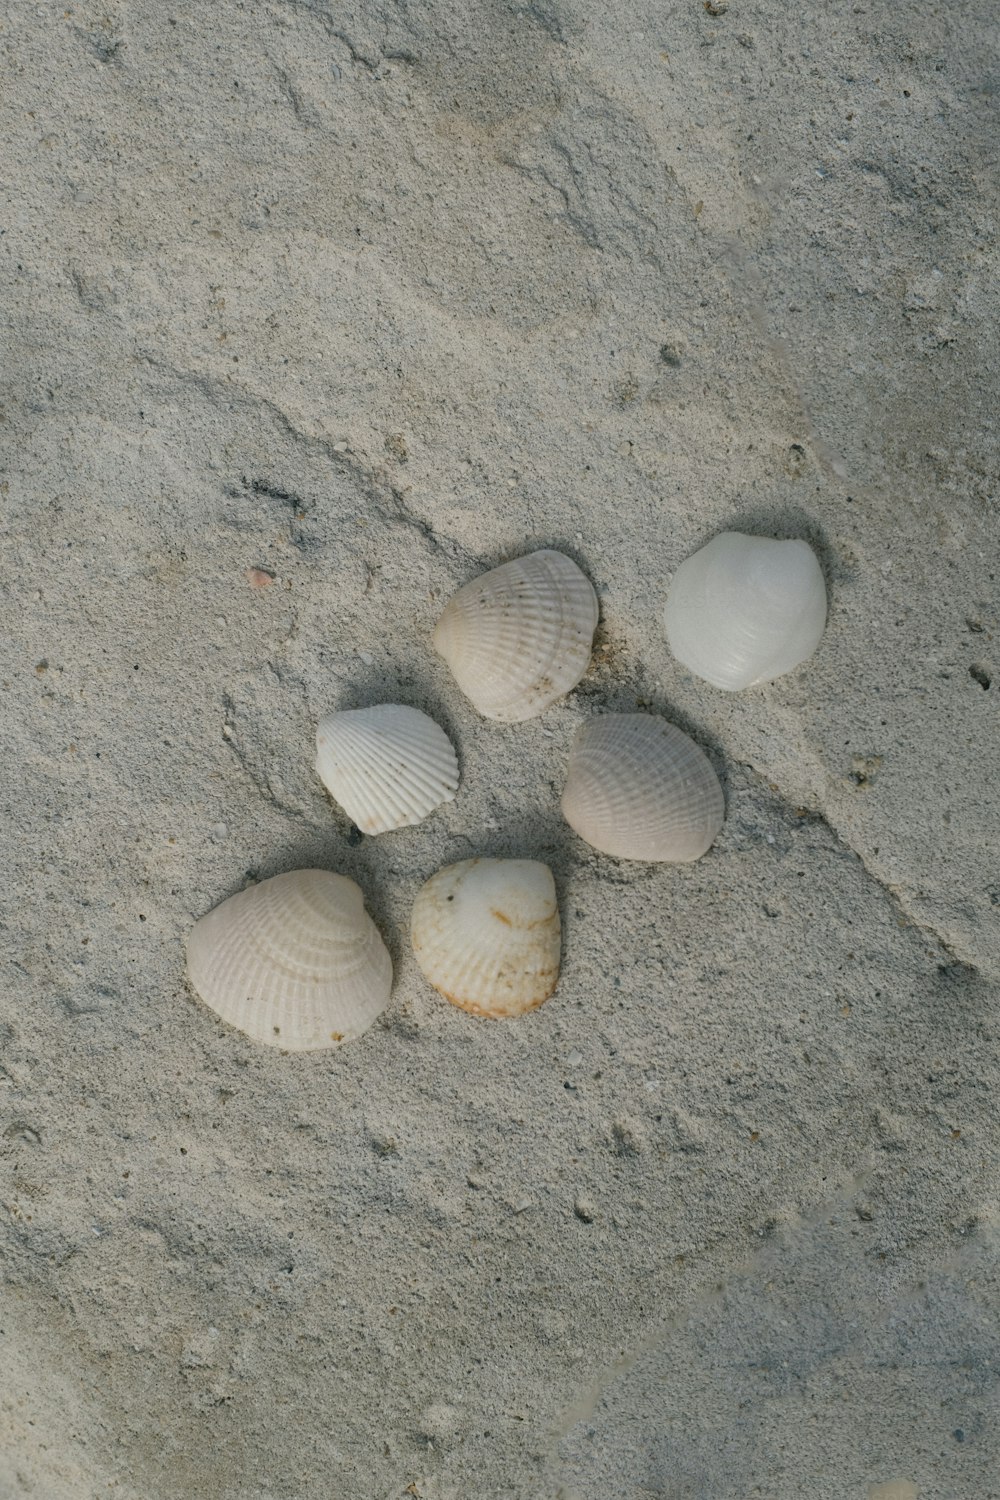 quatro conchas do mar na areia em uma praia